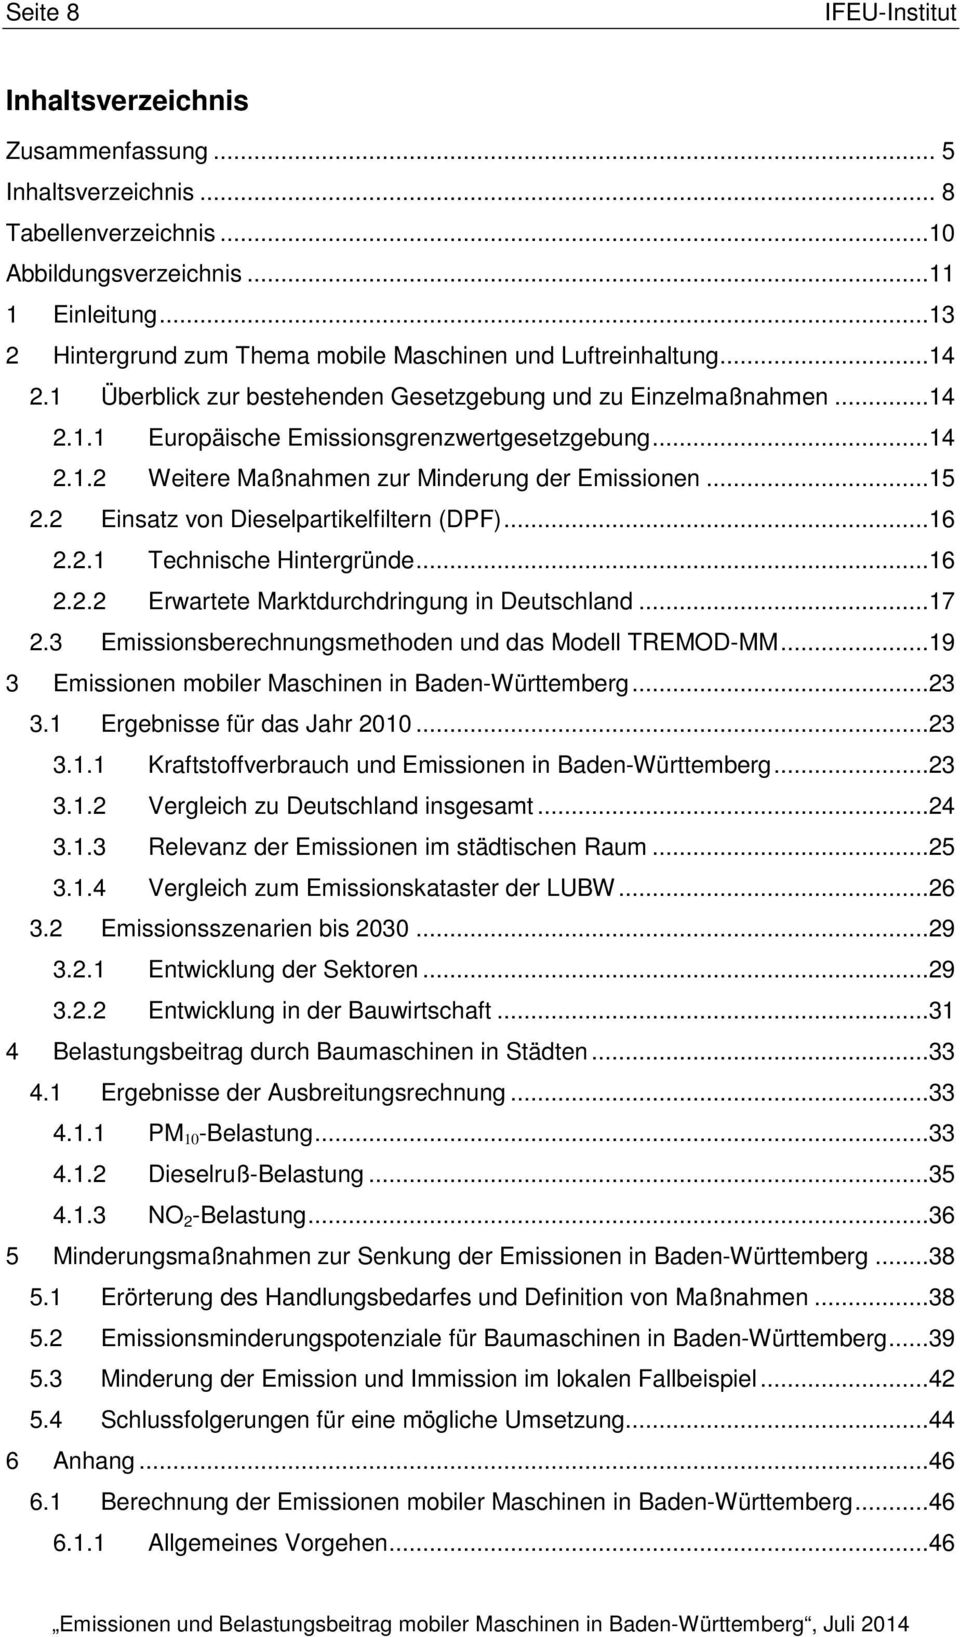 2 Technische Hintergründe...16 2.2.2 Erwartete Marktdurchdringung in Deutschland...17 Kraftstoffverbrauch und Emissionen in Baden-Württemberg...23 3.1.2 Vergleich zu Deutschland insgesamt...24 3.1.3 Relevanz der Emissionen im städtischen Raum.